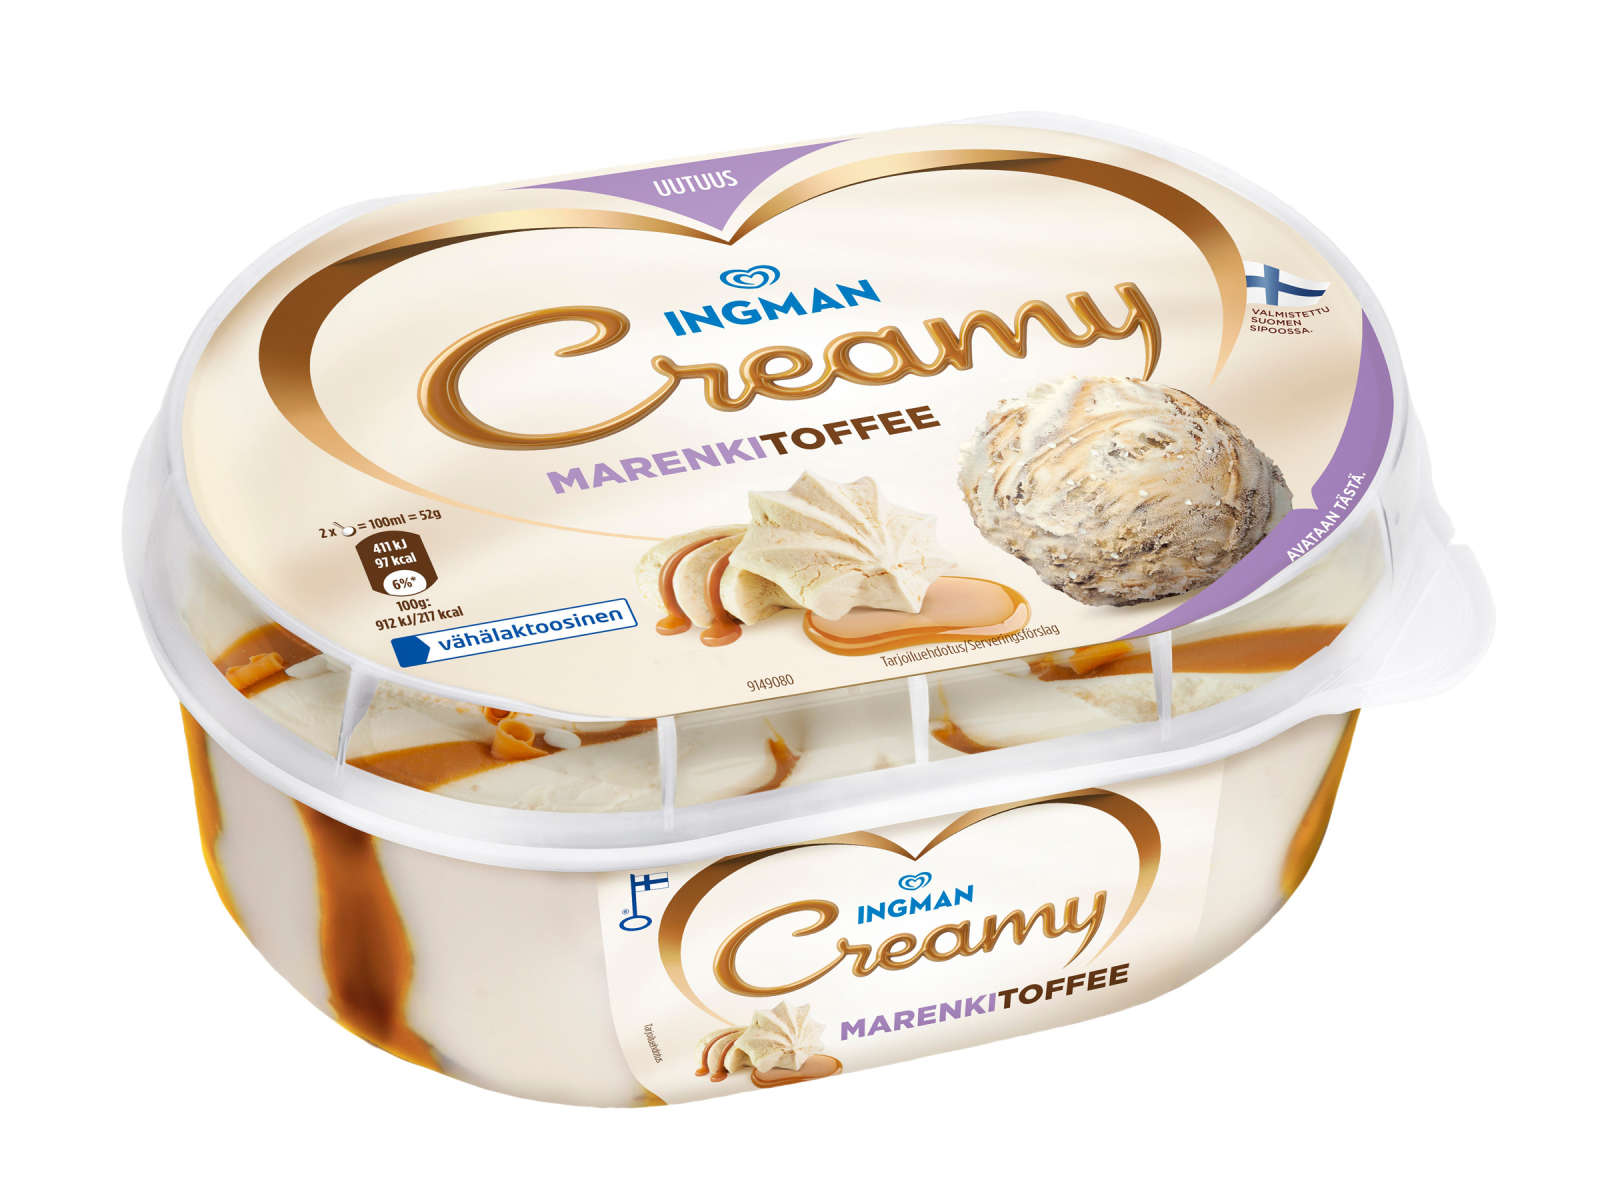 Ingman Creamy Marenkitoffee -jäätelöpakkaus